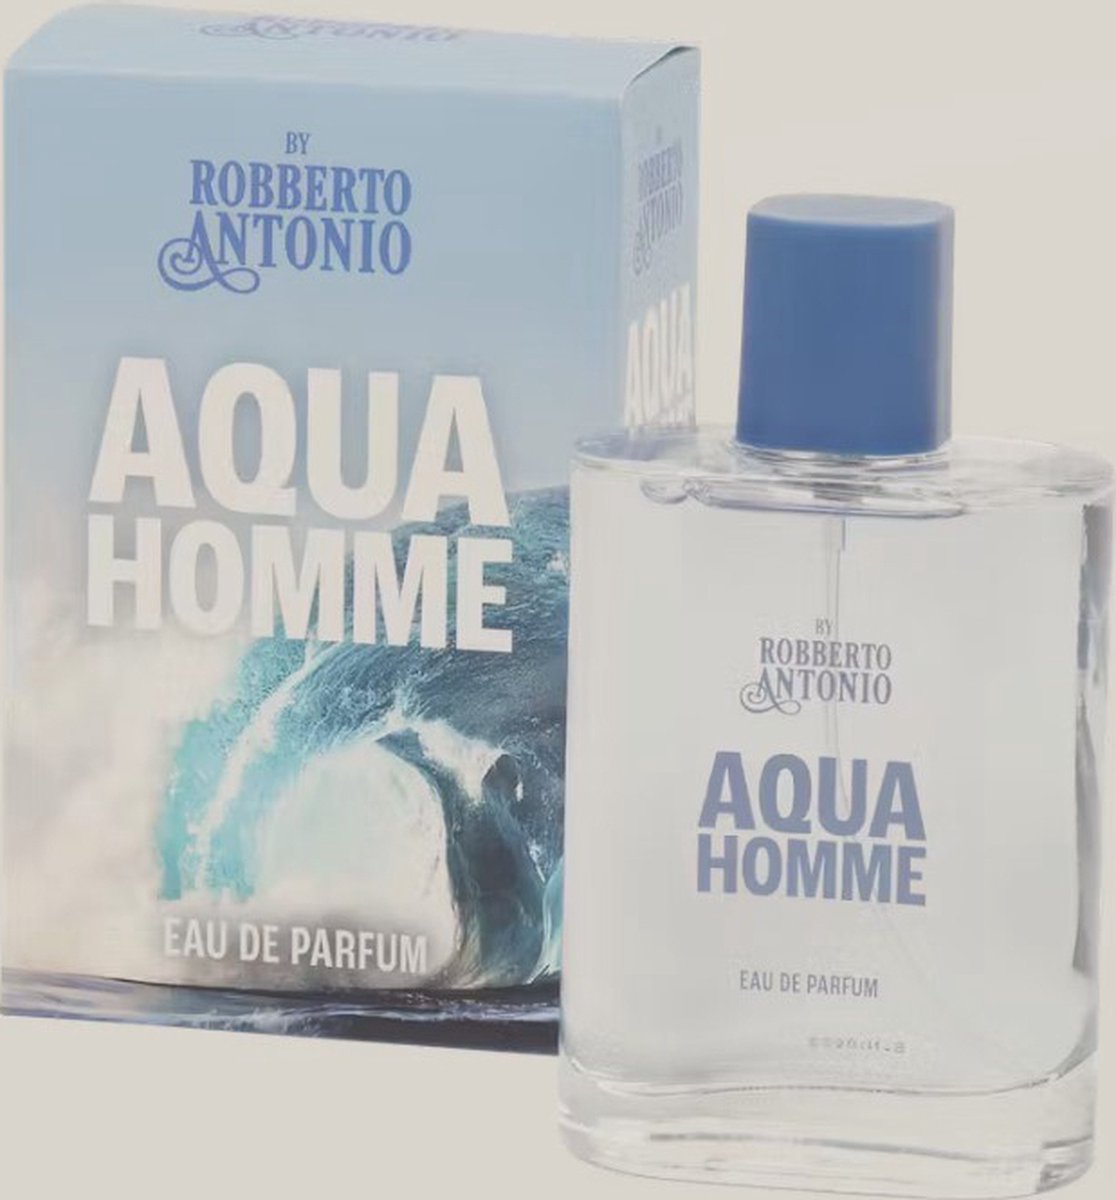 AQUA HOMME - ROBERTO ANTONIO - 100 ML EDP PERFUME FOR MEN - 100% NEW